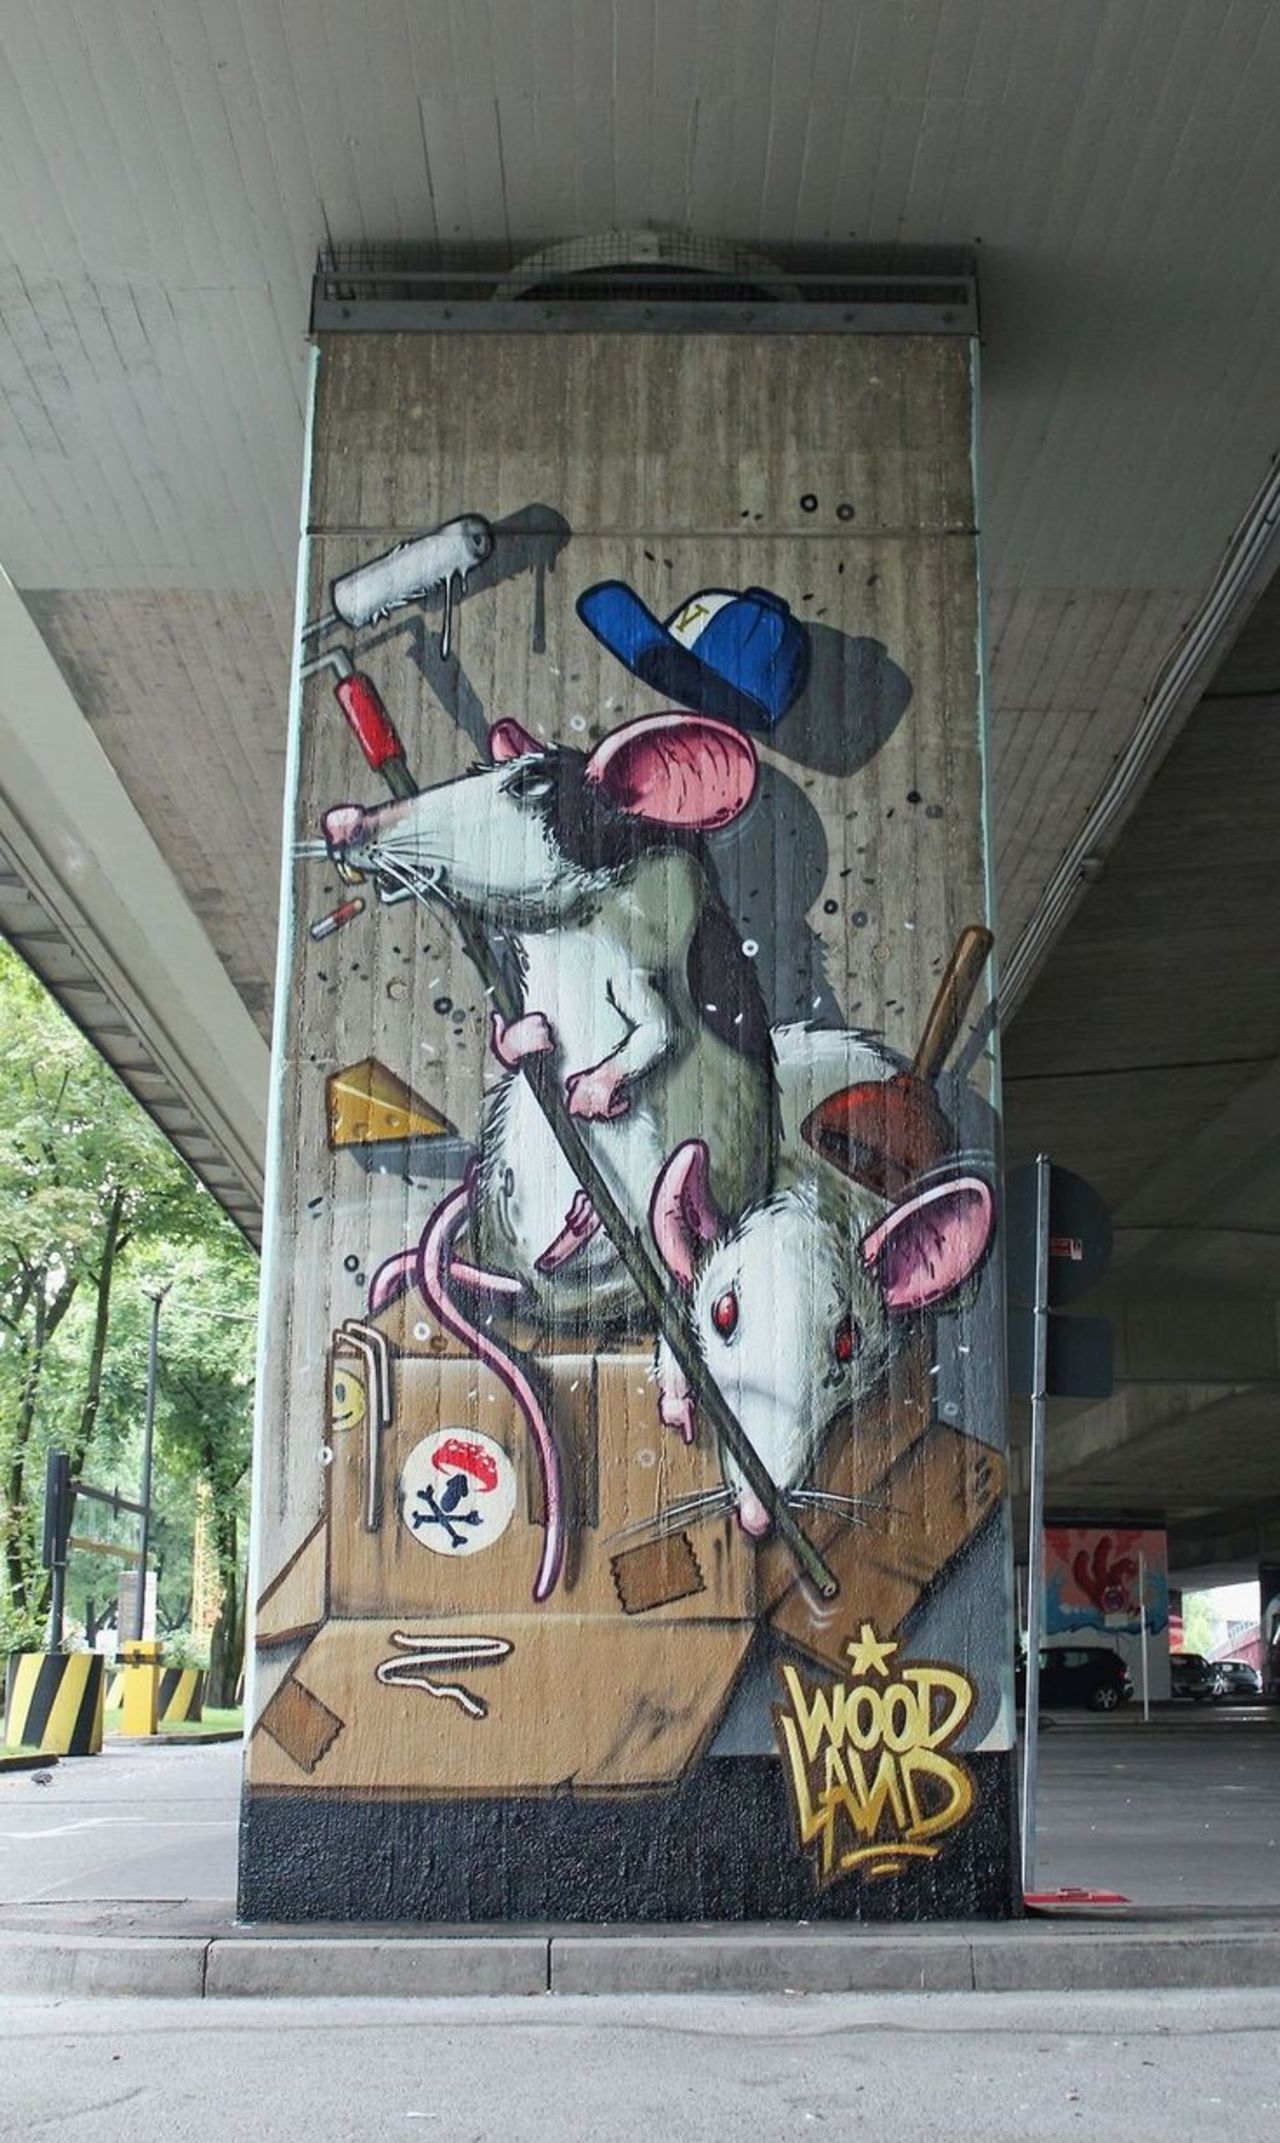 "@StreetArtBuzz: Mr.Woodland - German https://twib.in/l/qoRyAKrG9kB #art #design #graffiti http://t.co/nZXqT6NgYu"